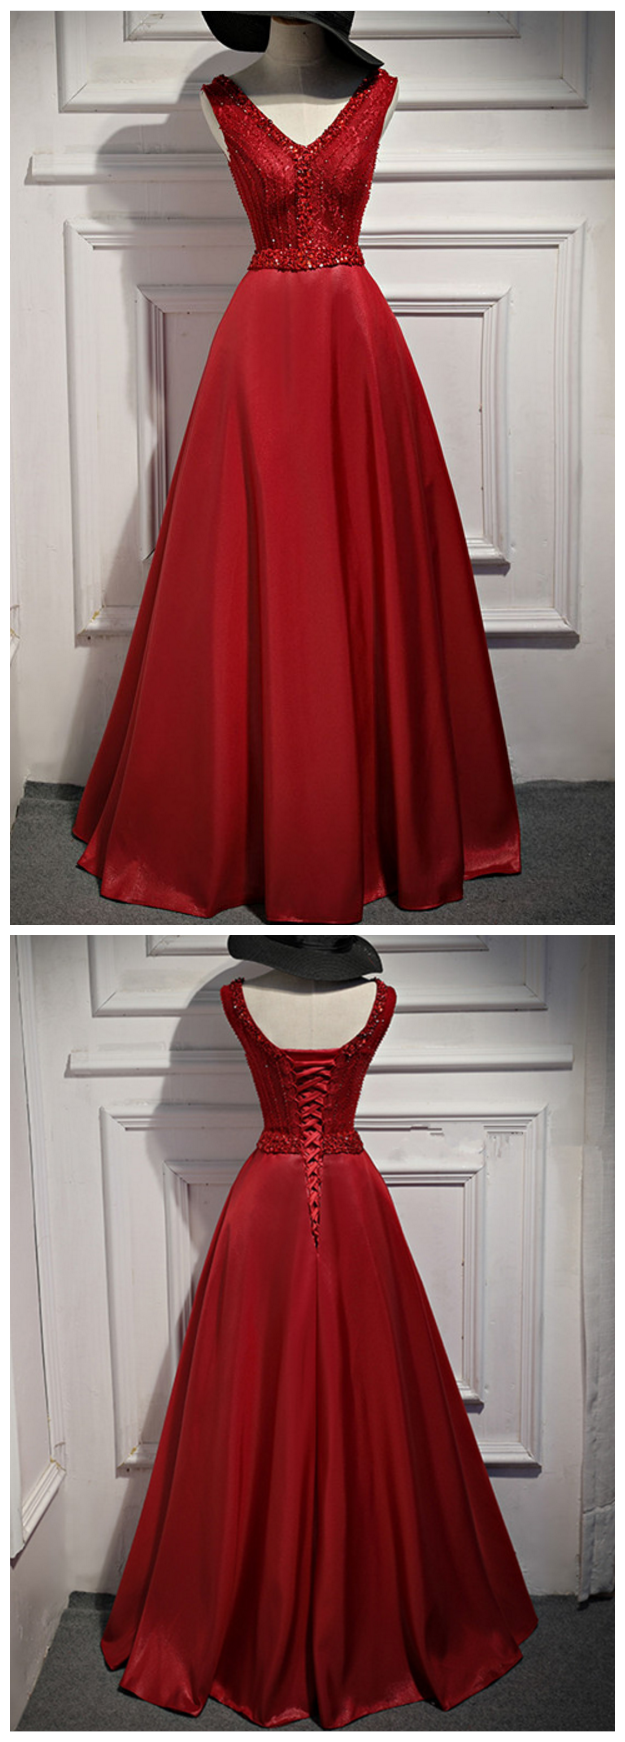 Satin With Applique Evening Dresses ,robe De Soiree Vestido De Festa Asymmetrical Evening Dresses